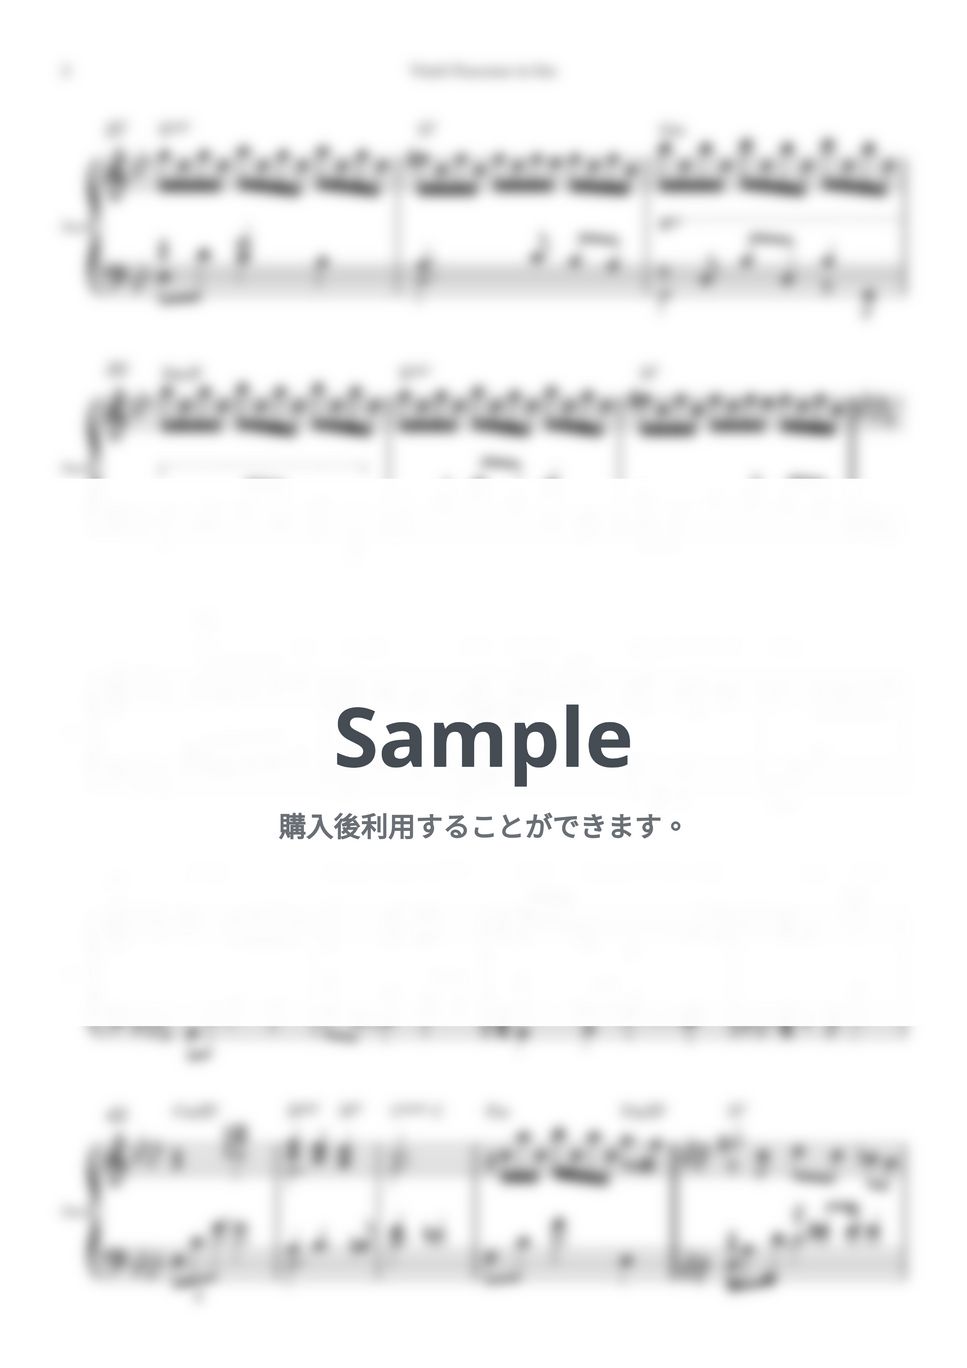 ビタリー - シャコンヌ (ピアノソロ楽譜) by Piano QQQ